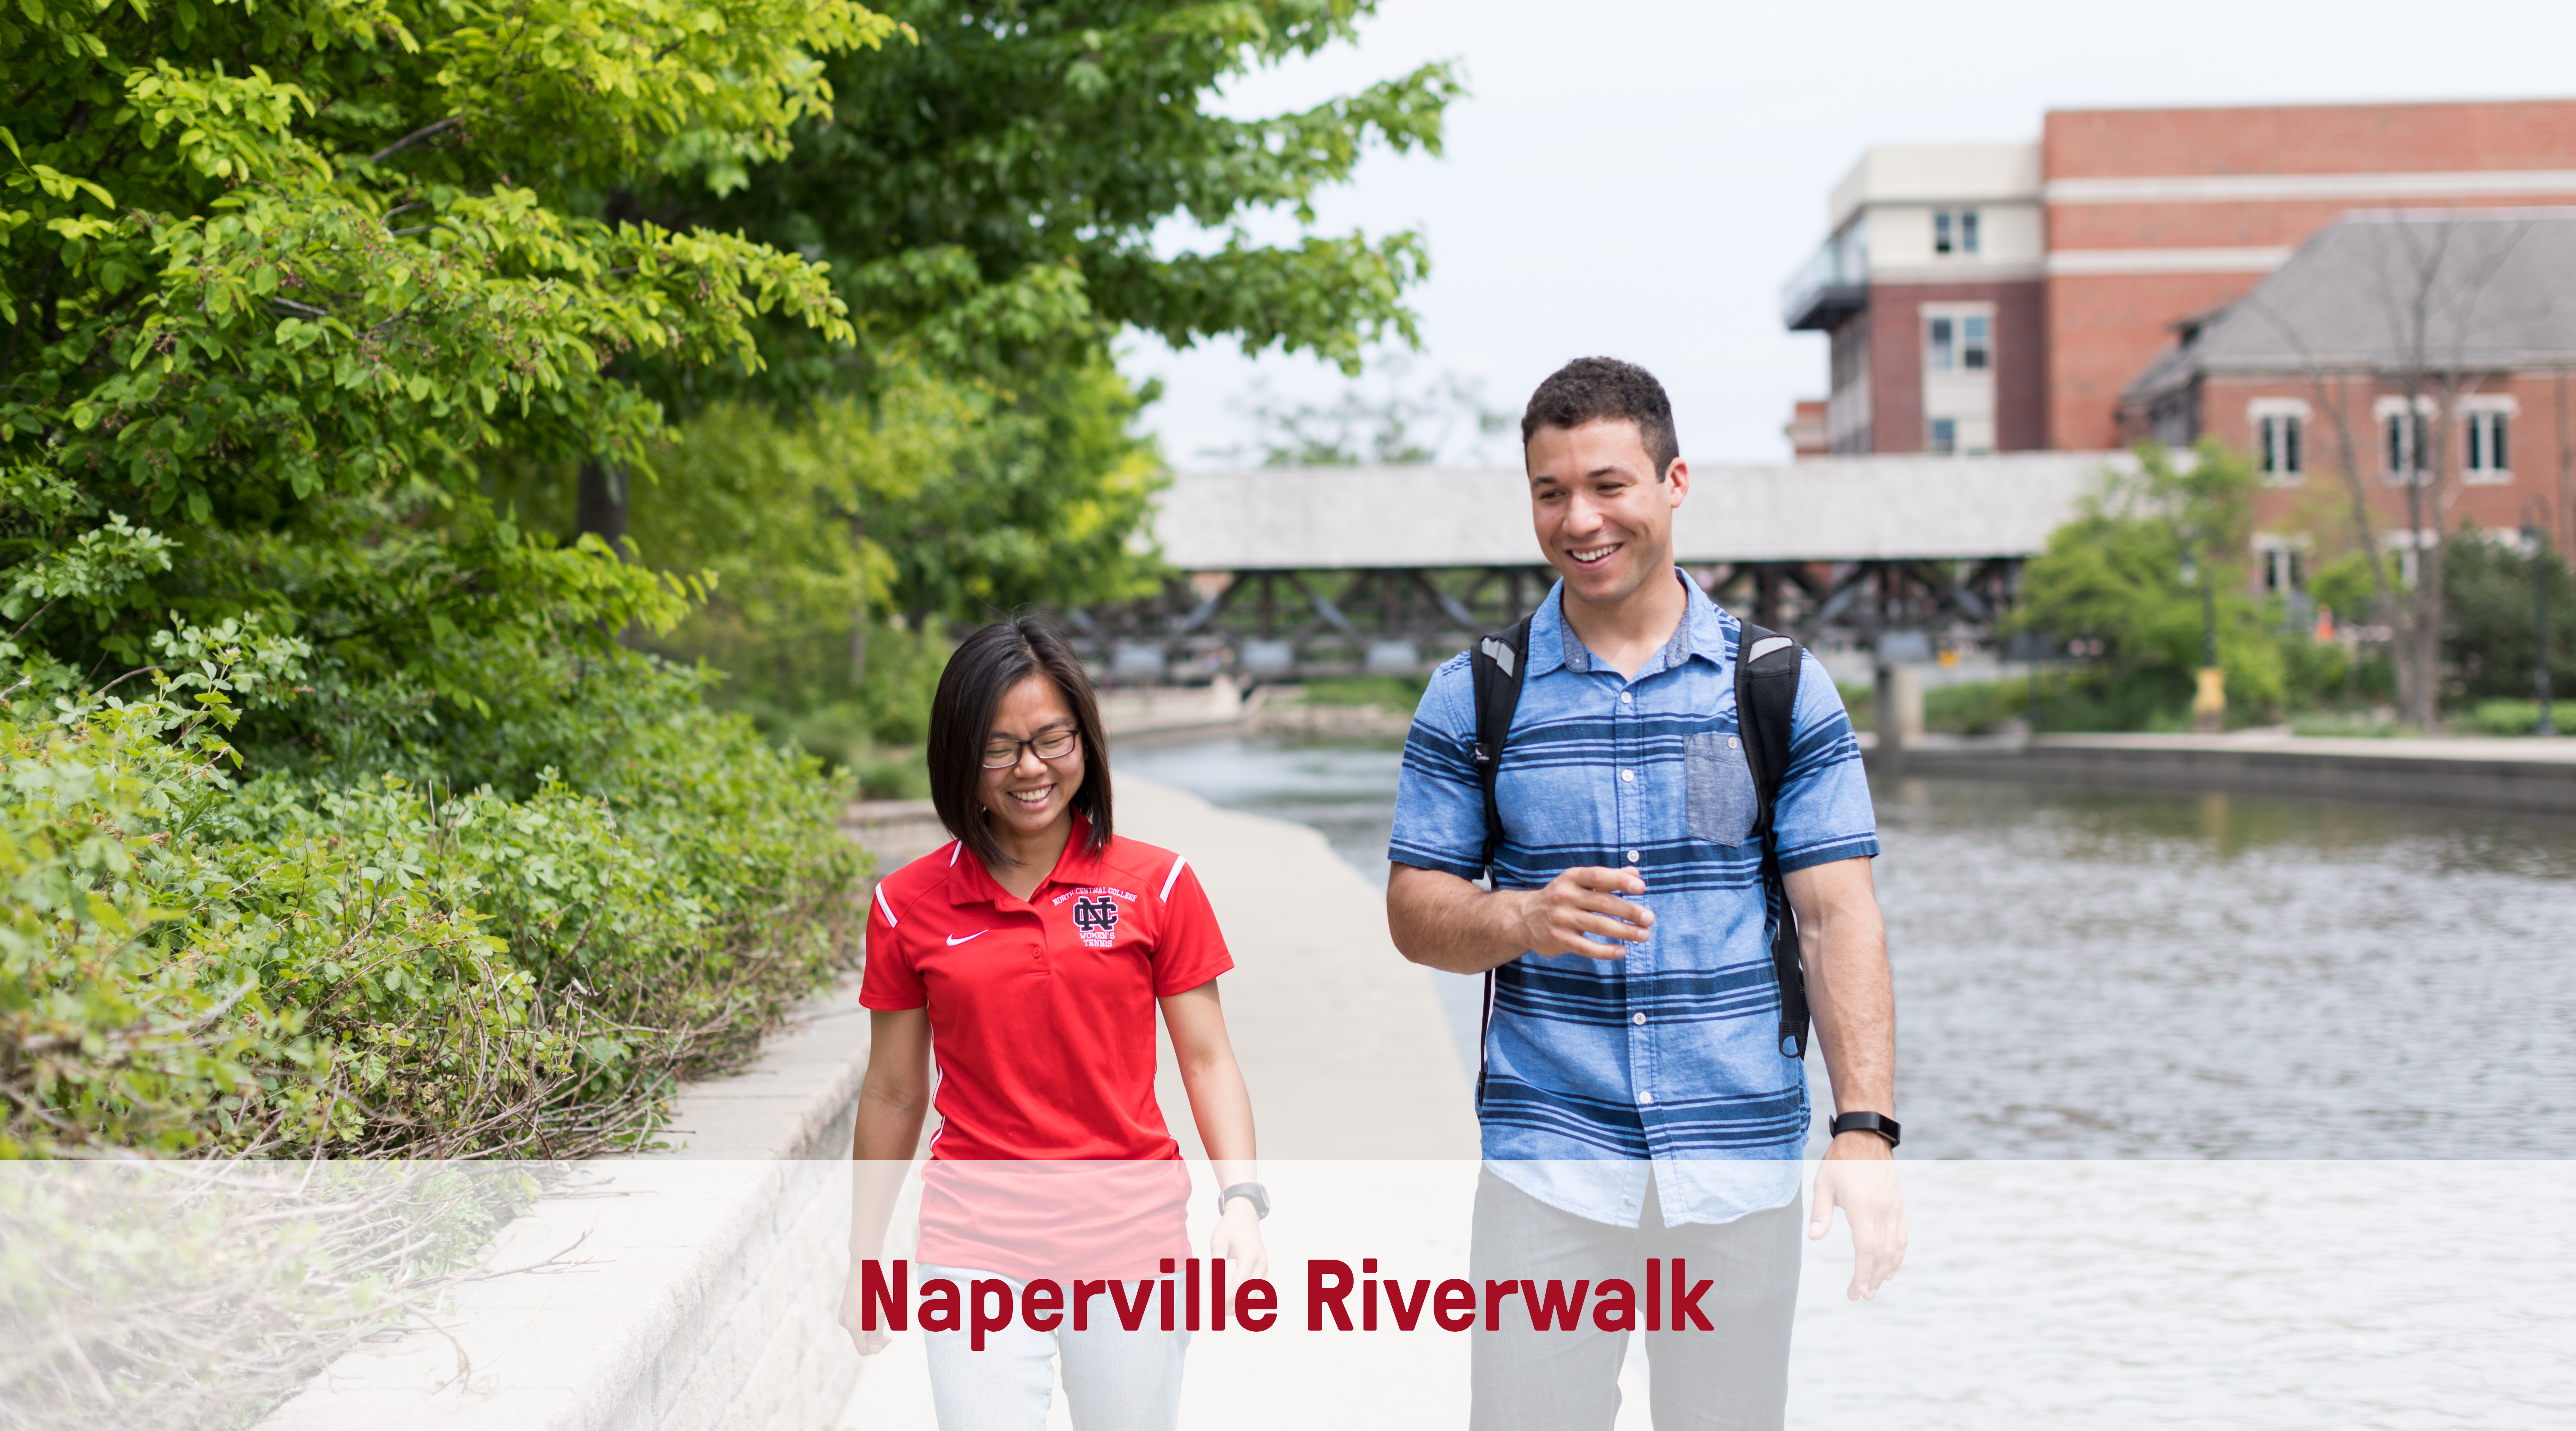 Naperville Riverwalk